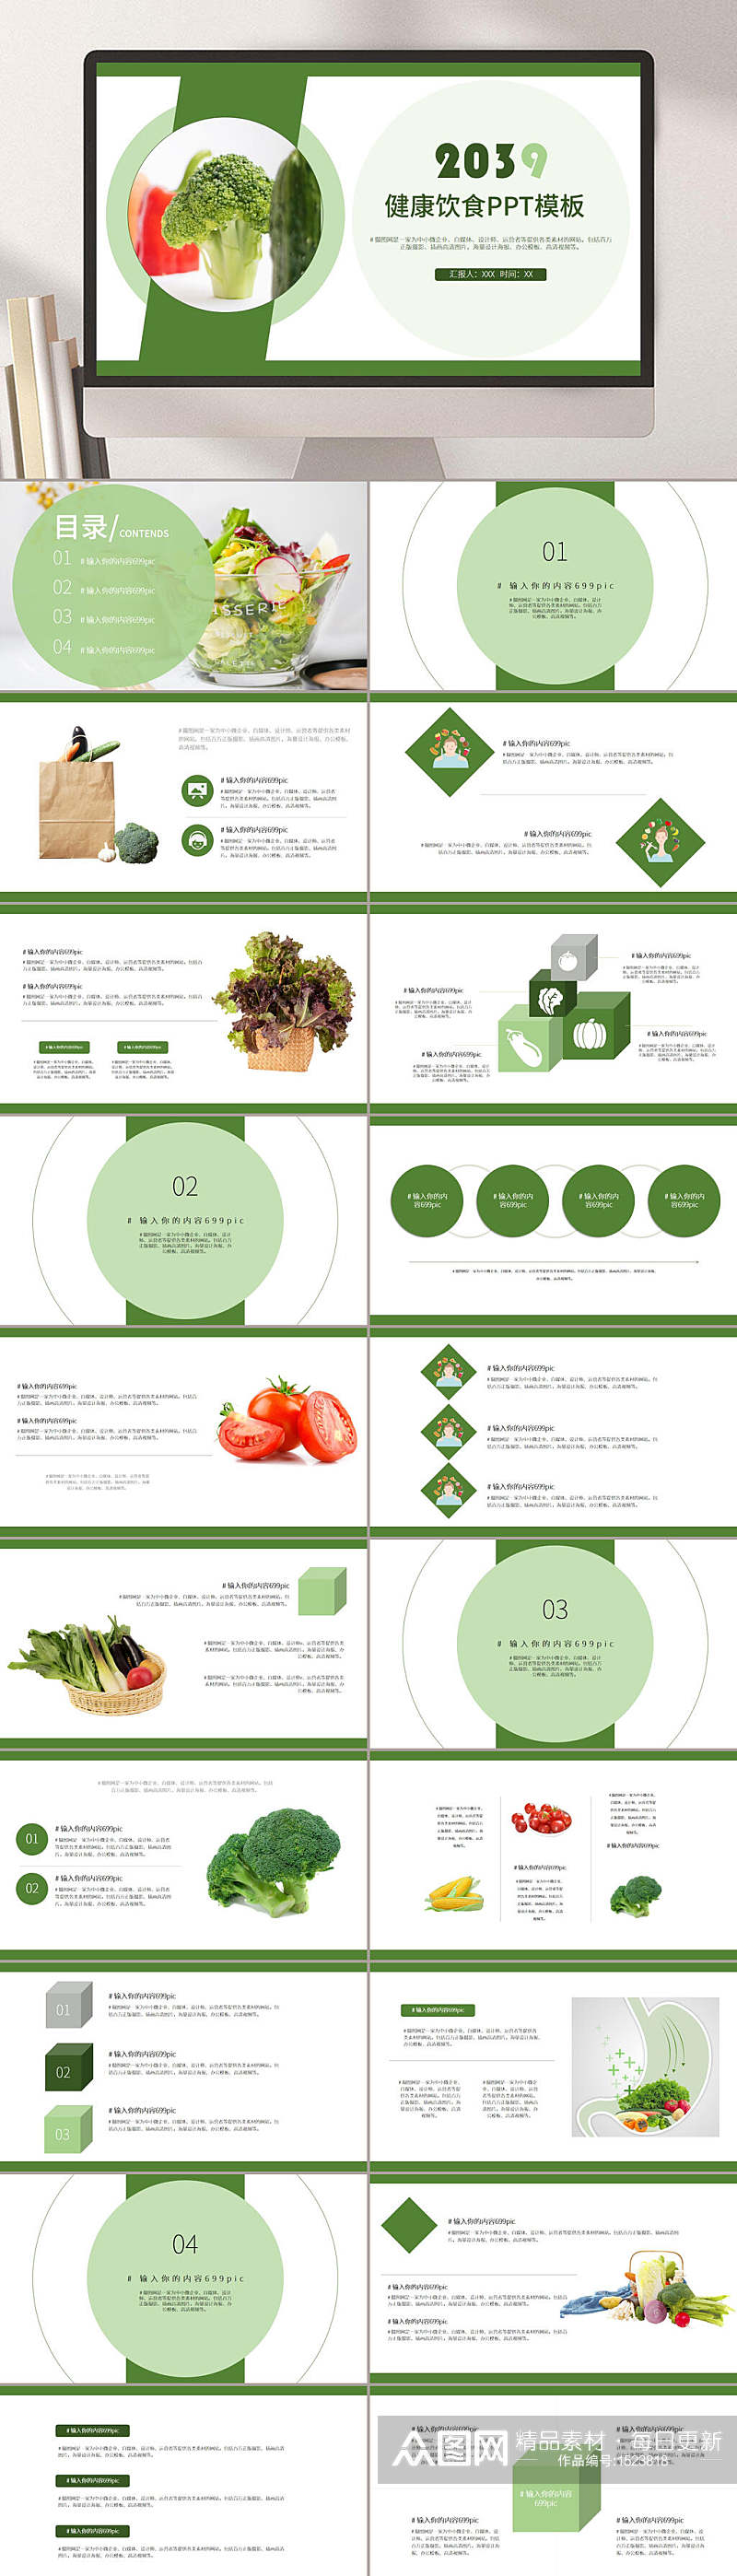 健康饮食水果蔬菜PPT模板素材